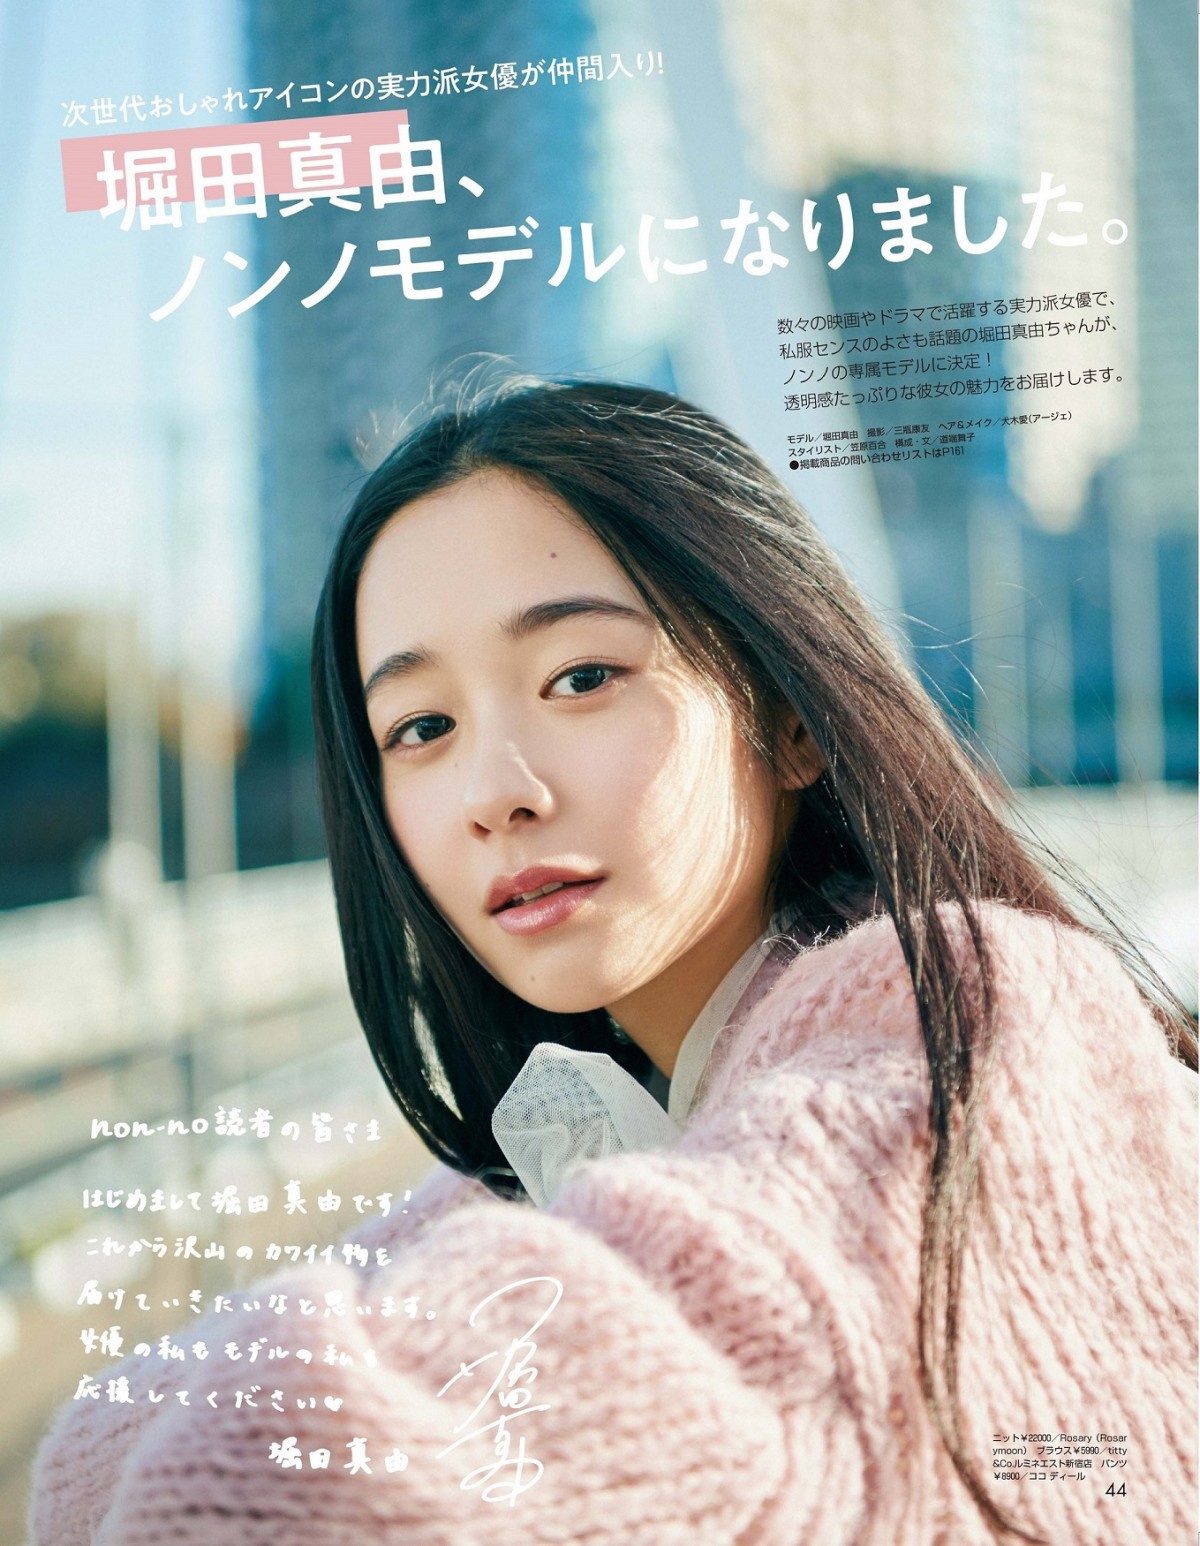 堀田真由 Non No 専属モデルに決定 誌面で おしゃれ をお届けしたい Oricon News